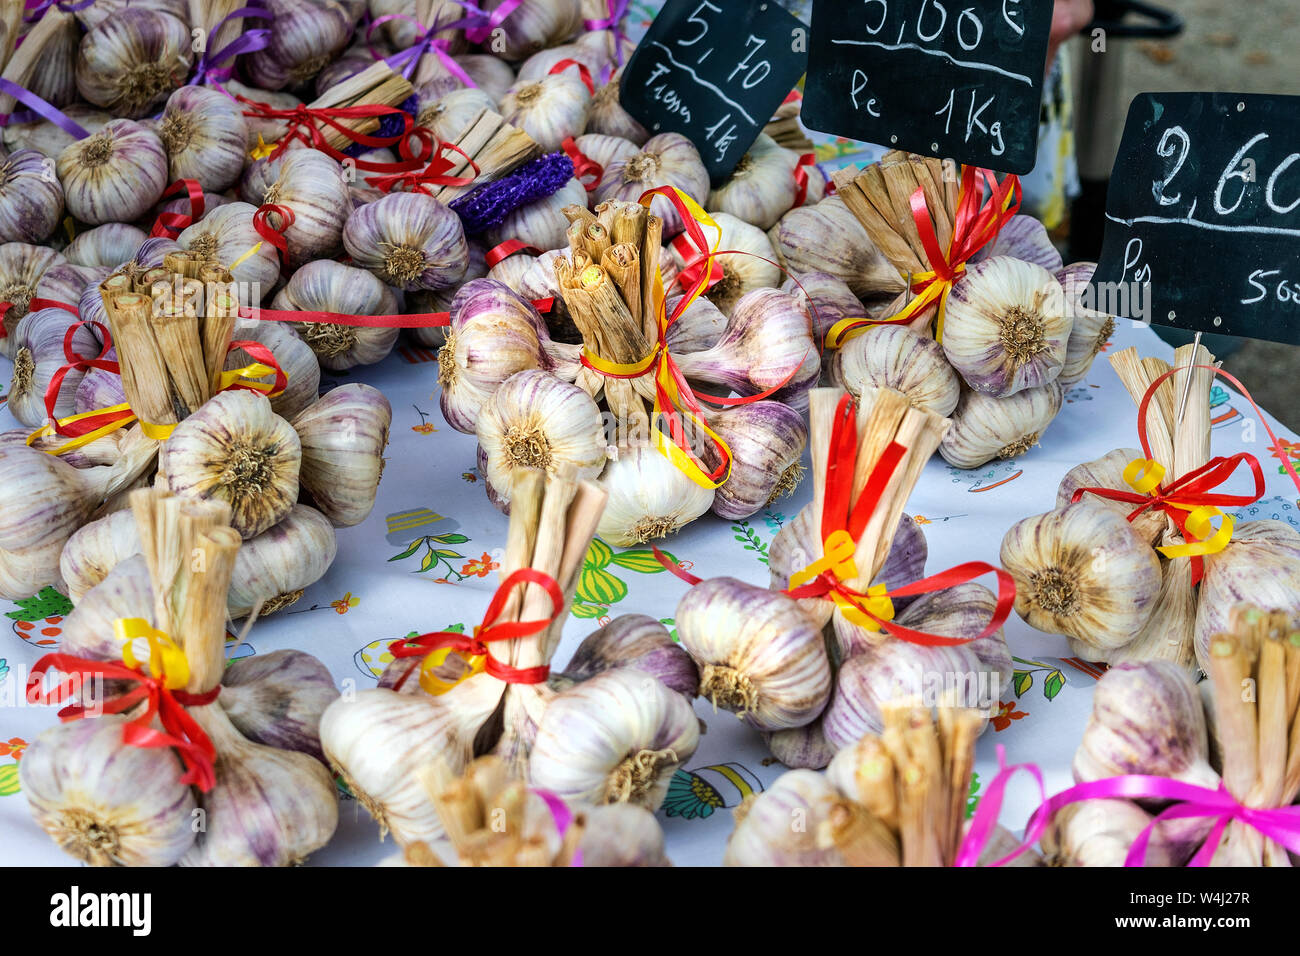 Un mercato in stallo Lavardac, in Francia, in Europa la vendita di bellissimi mazzetti di aglio fresco lampadine legati insieme con nastri Foto Stock